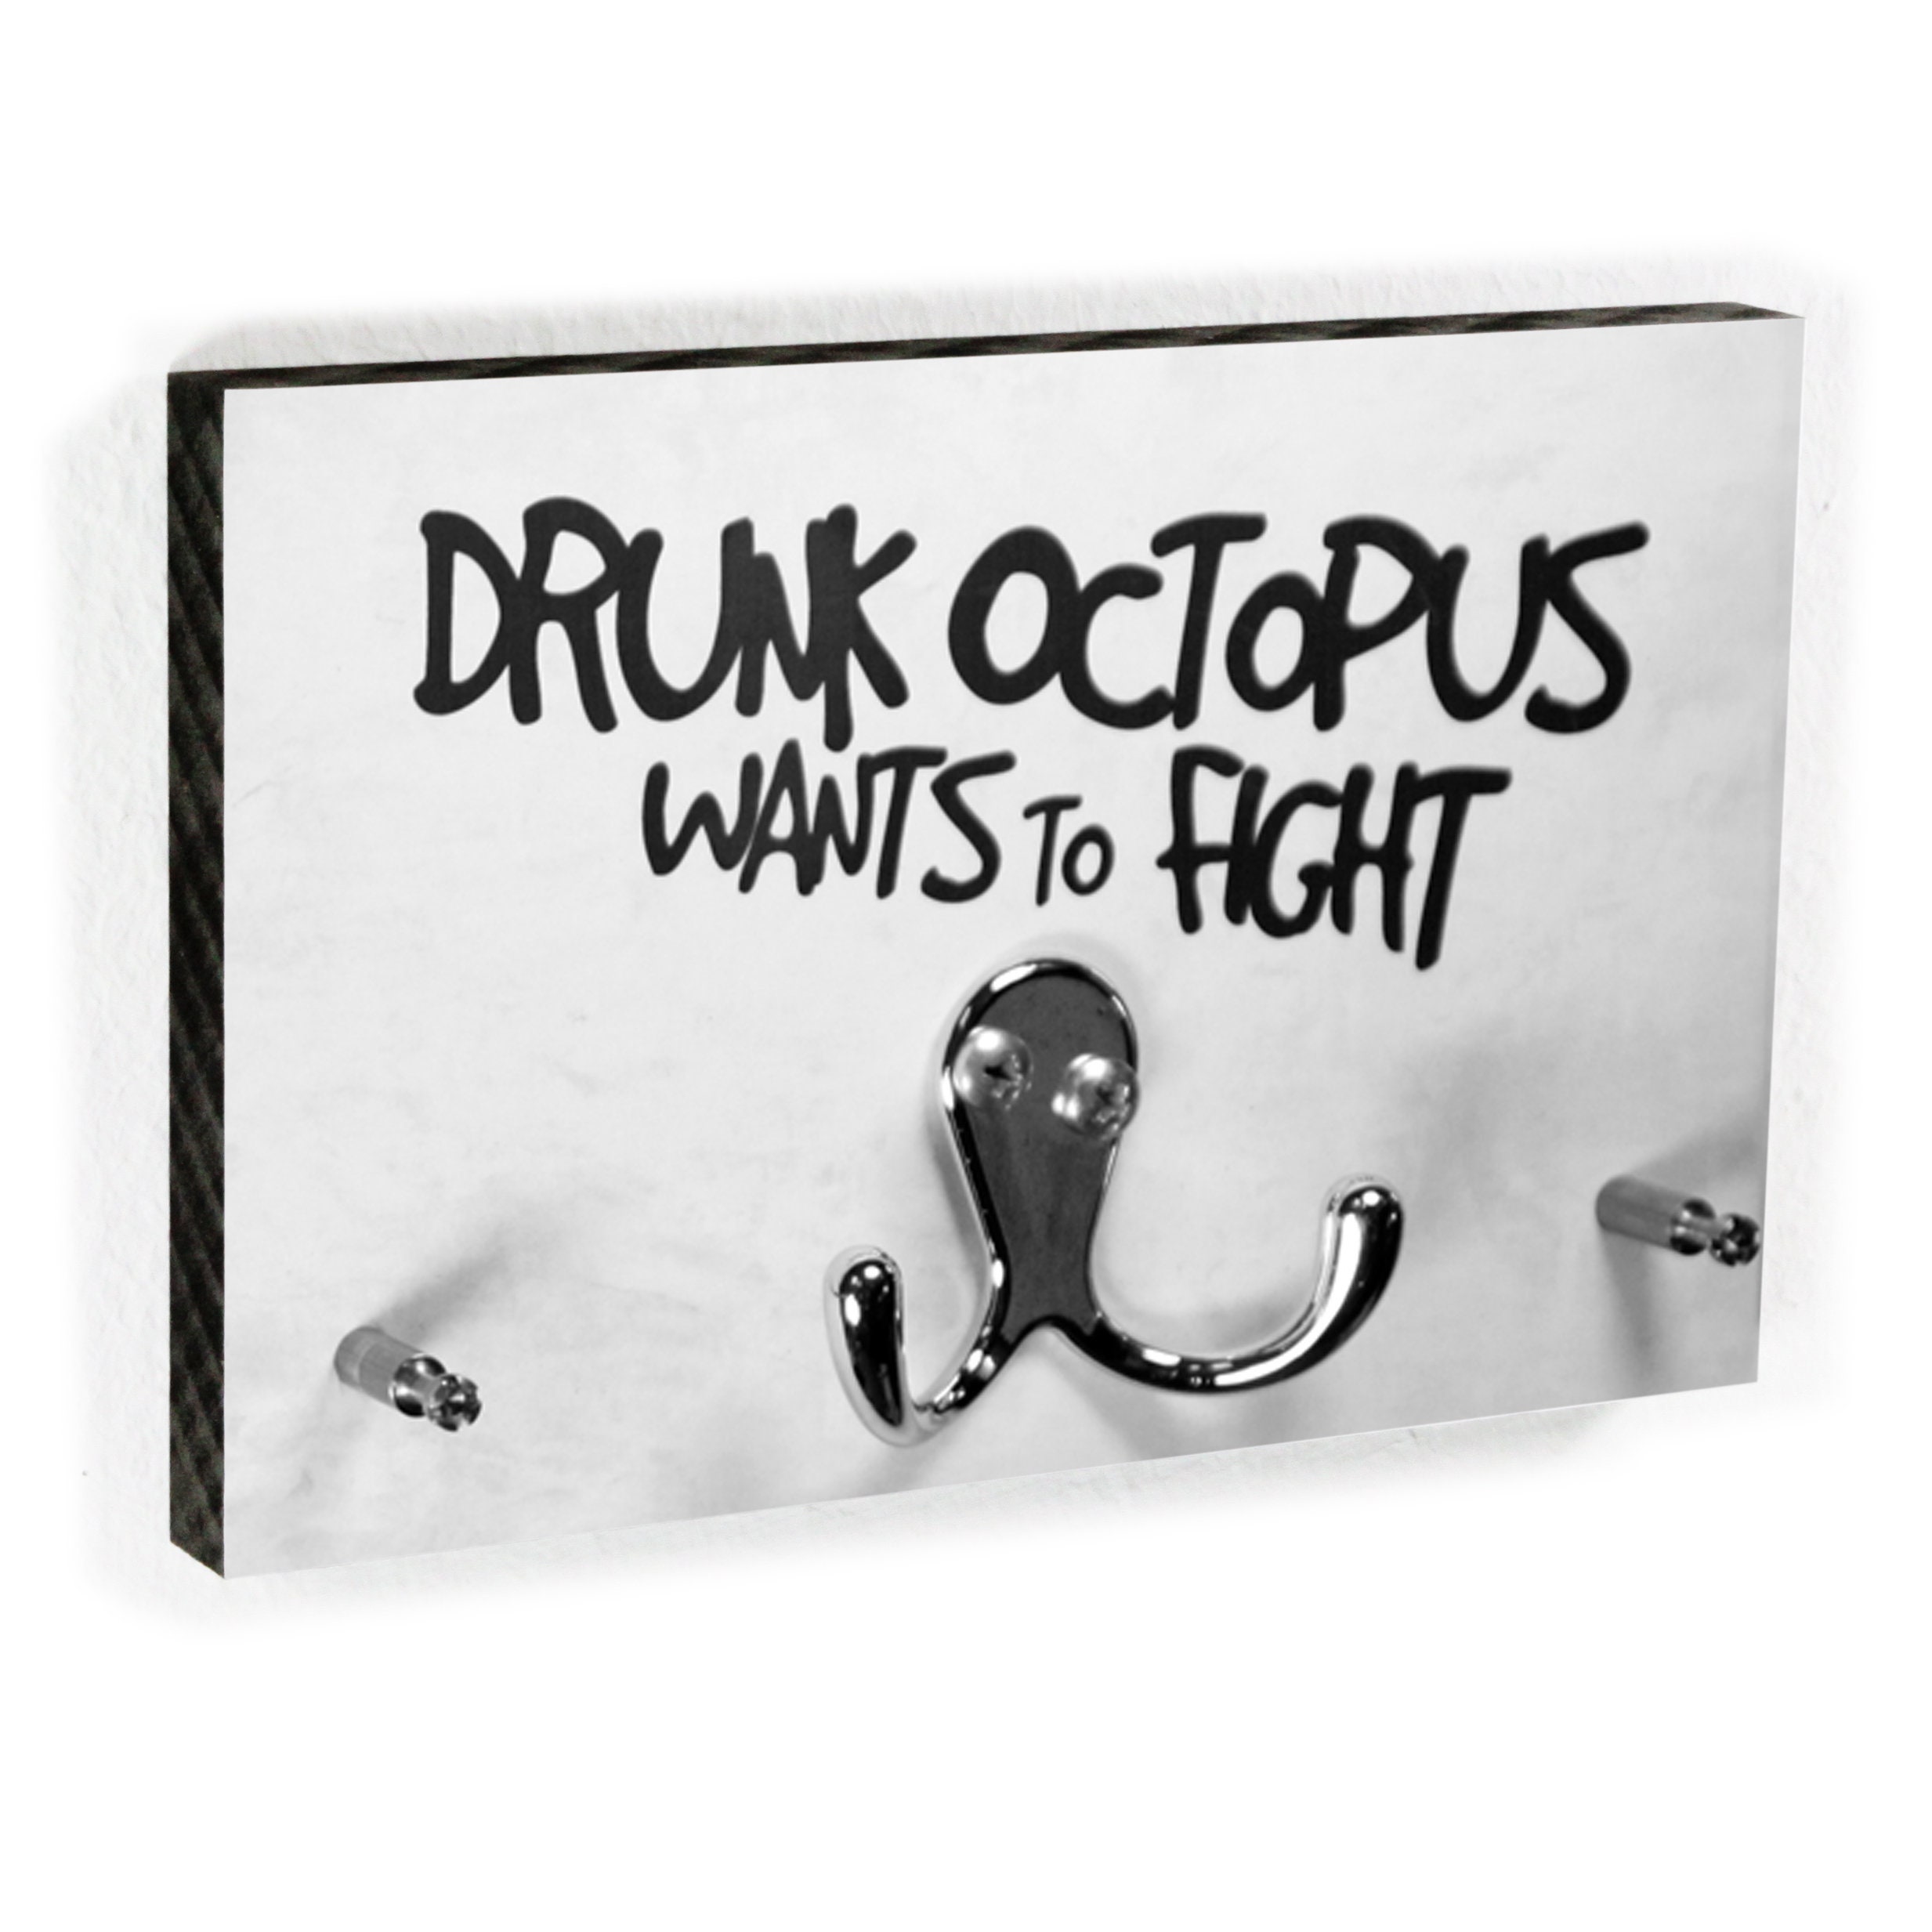 Key Board Drunk Octopus Wants to Fight Funny Hook Bar 4 Keys the